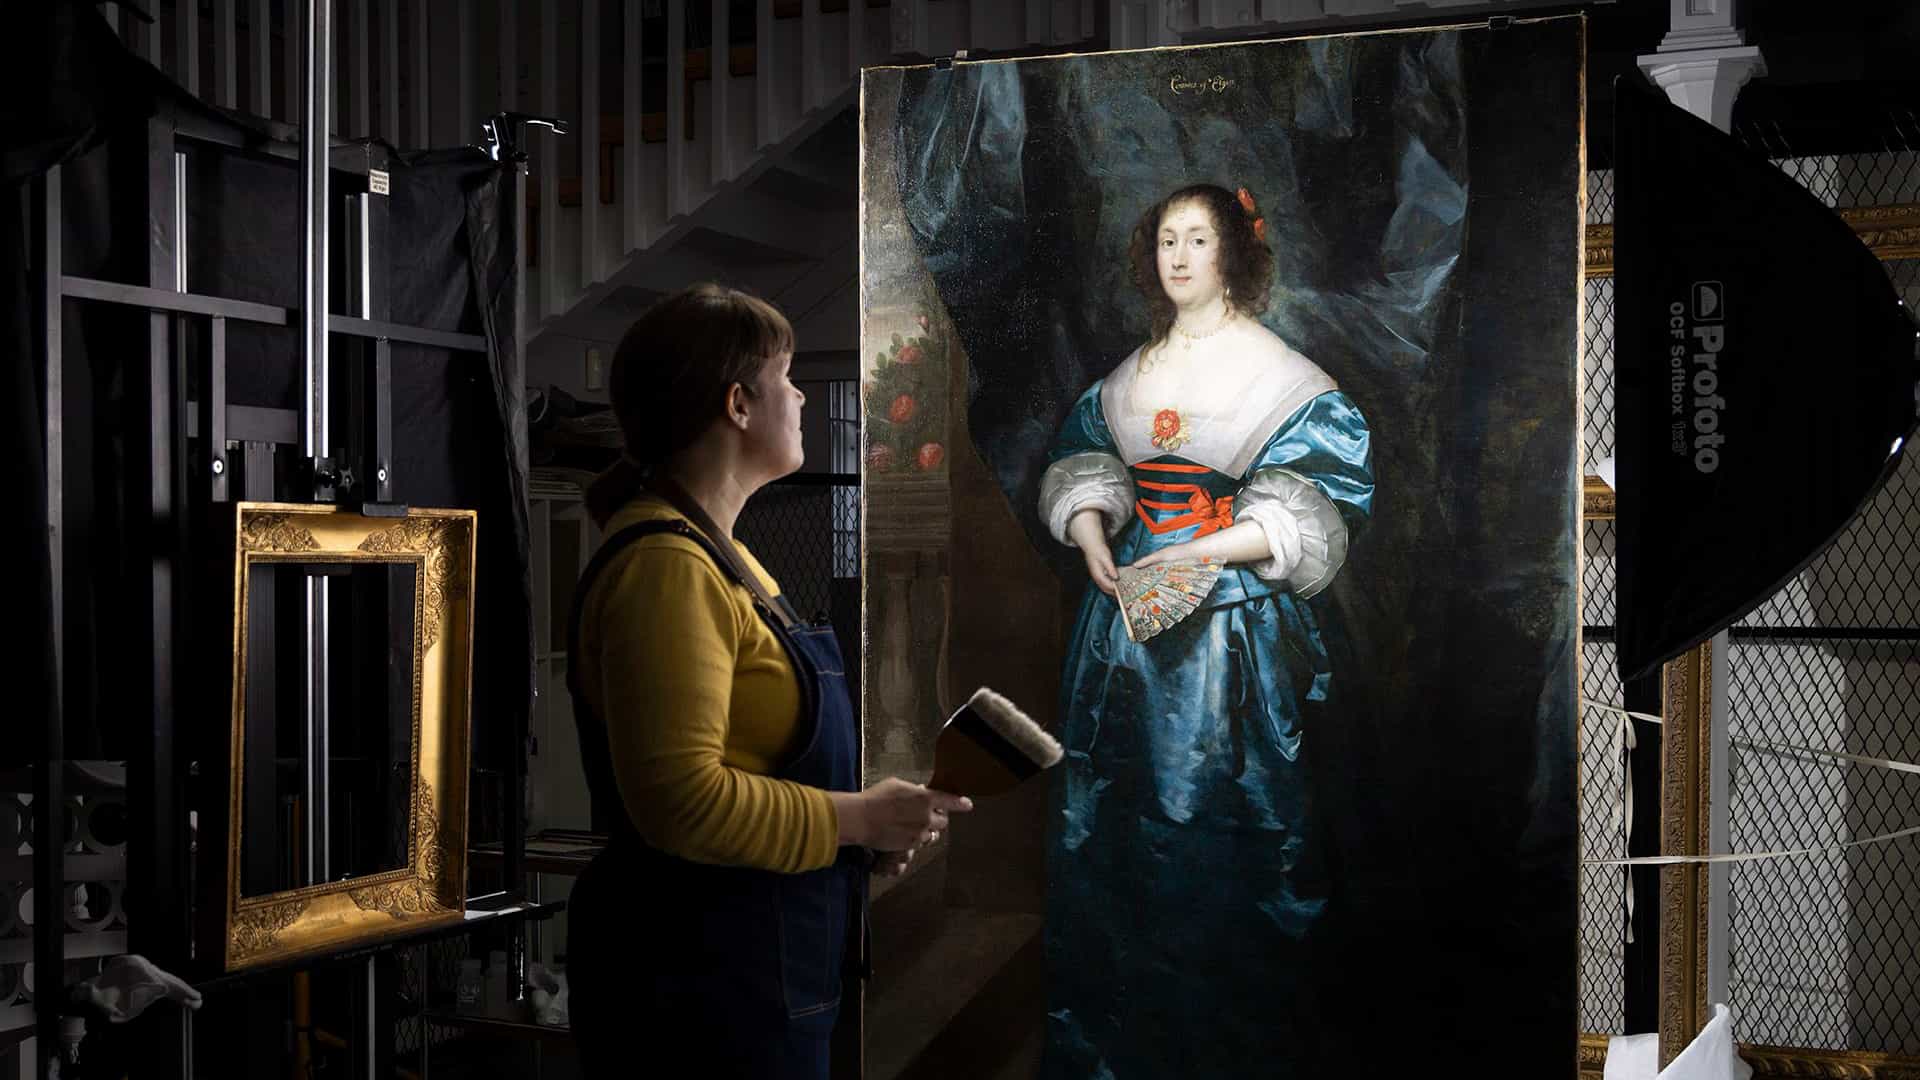 Este retrato fue objeto de filtros de belleza del siglo XVII en una sorprendente sobrepintura